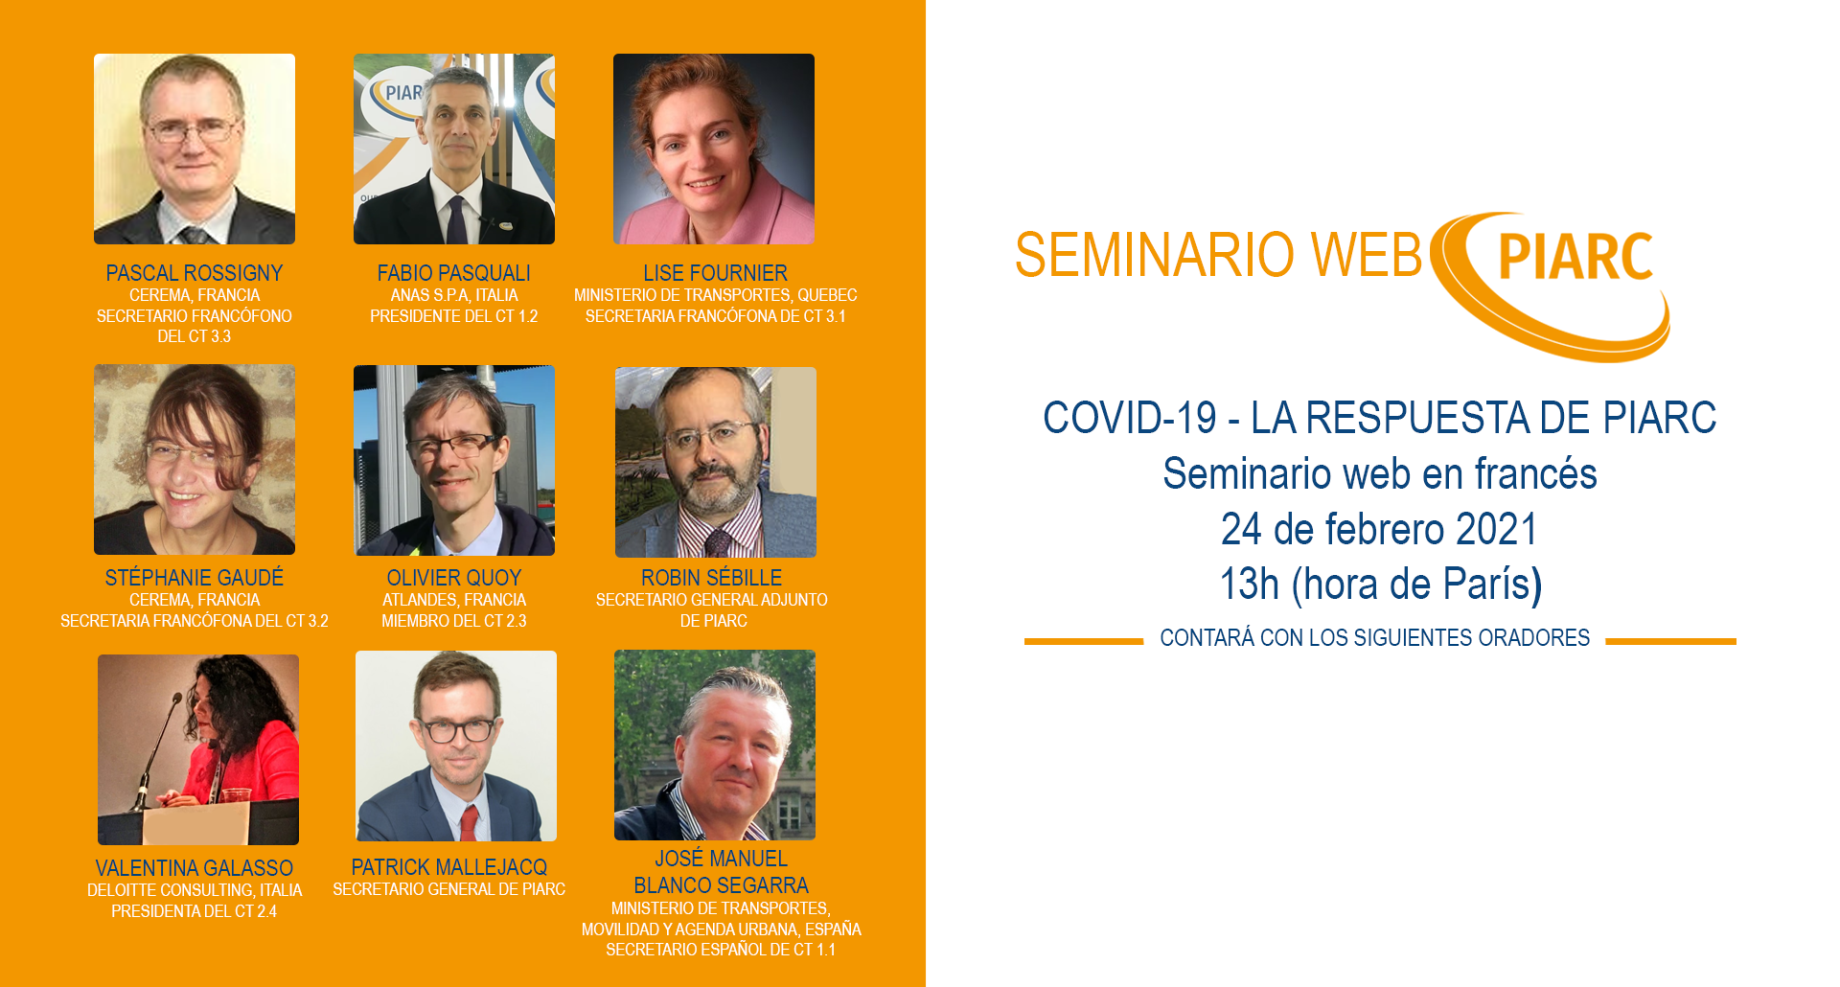 ¡Obtenga más información sobre el informe técnico especial COVID-19 en el próximo seminario web de PIARC!